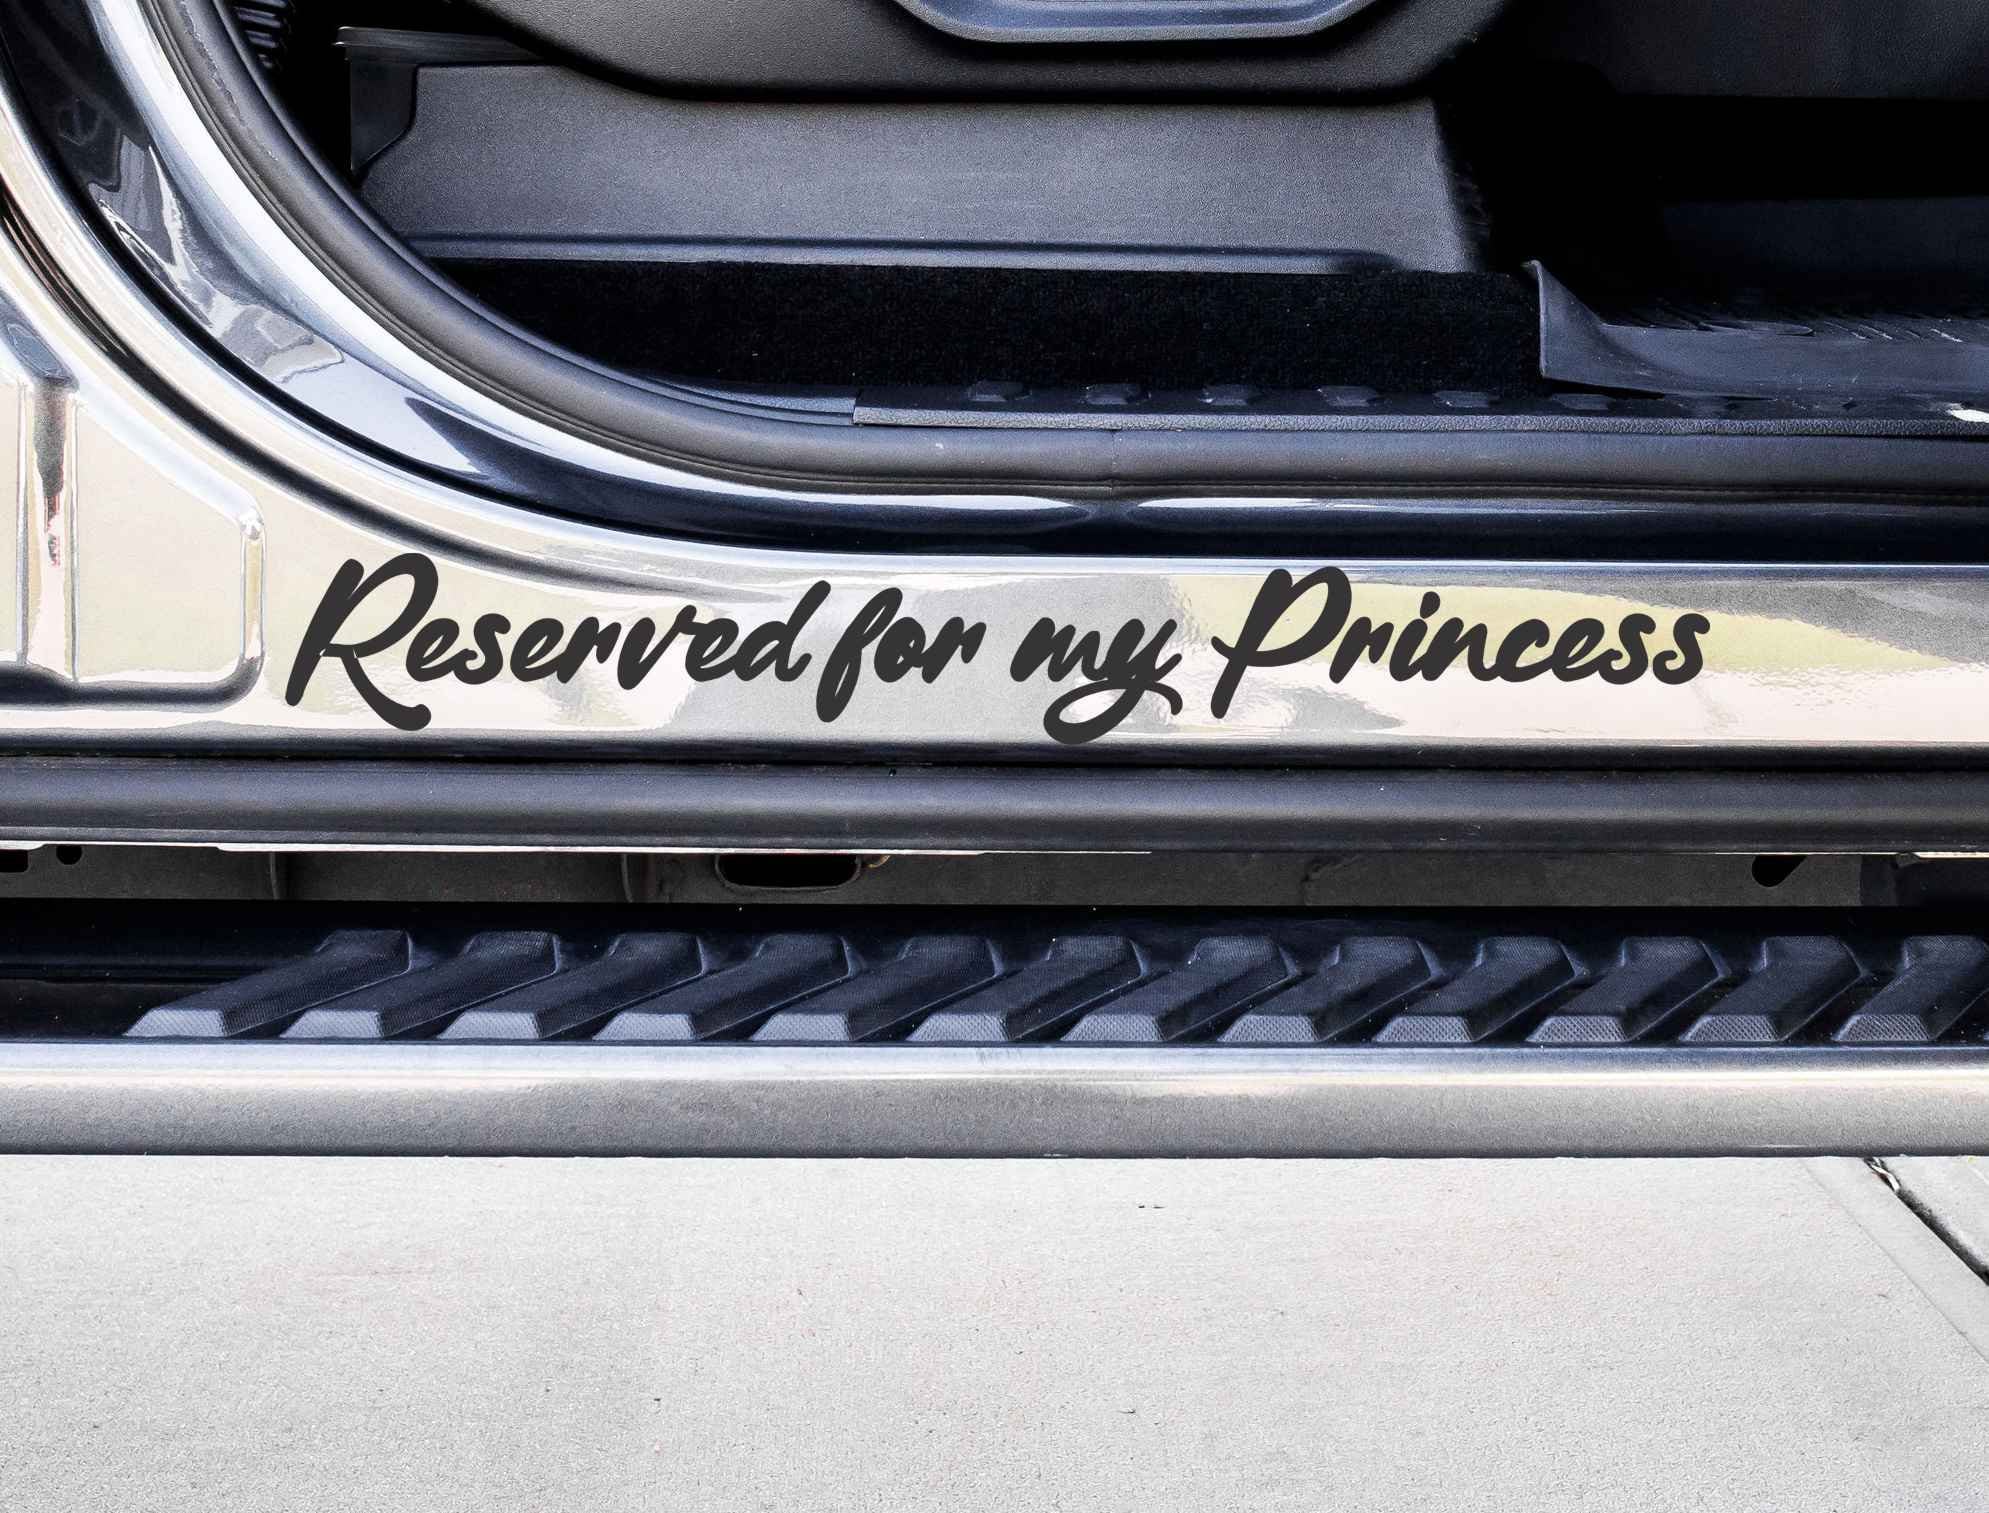 Passenger Princess Car Decal – DCPRINTS